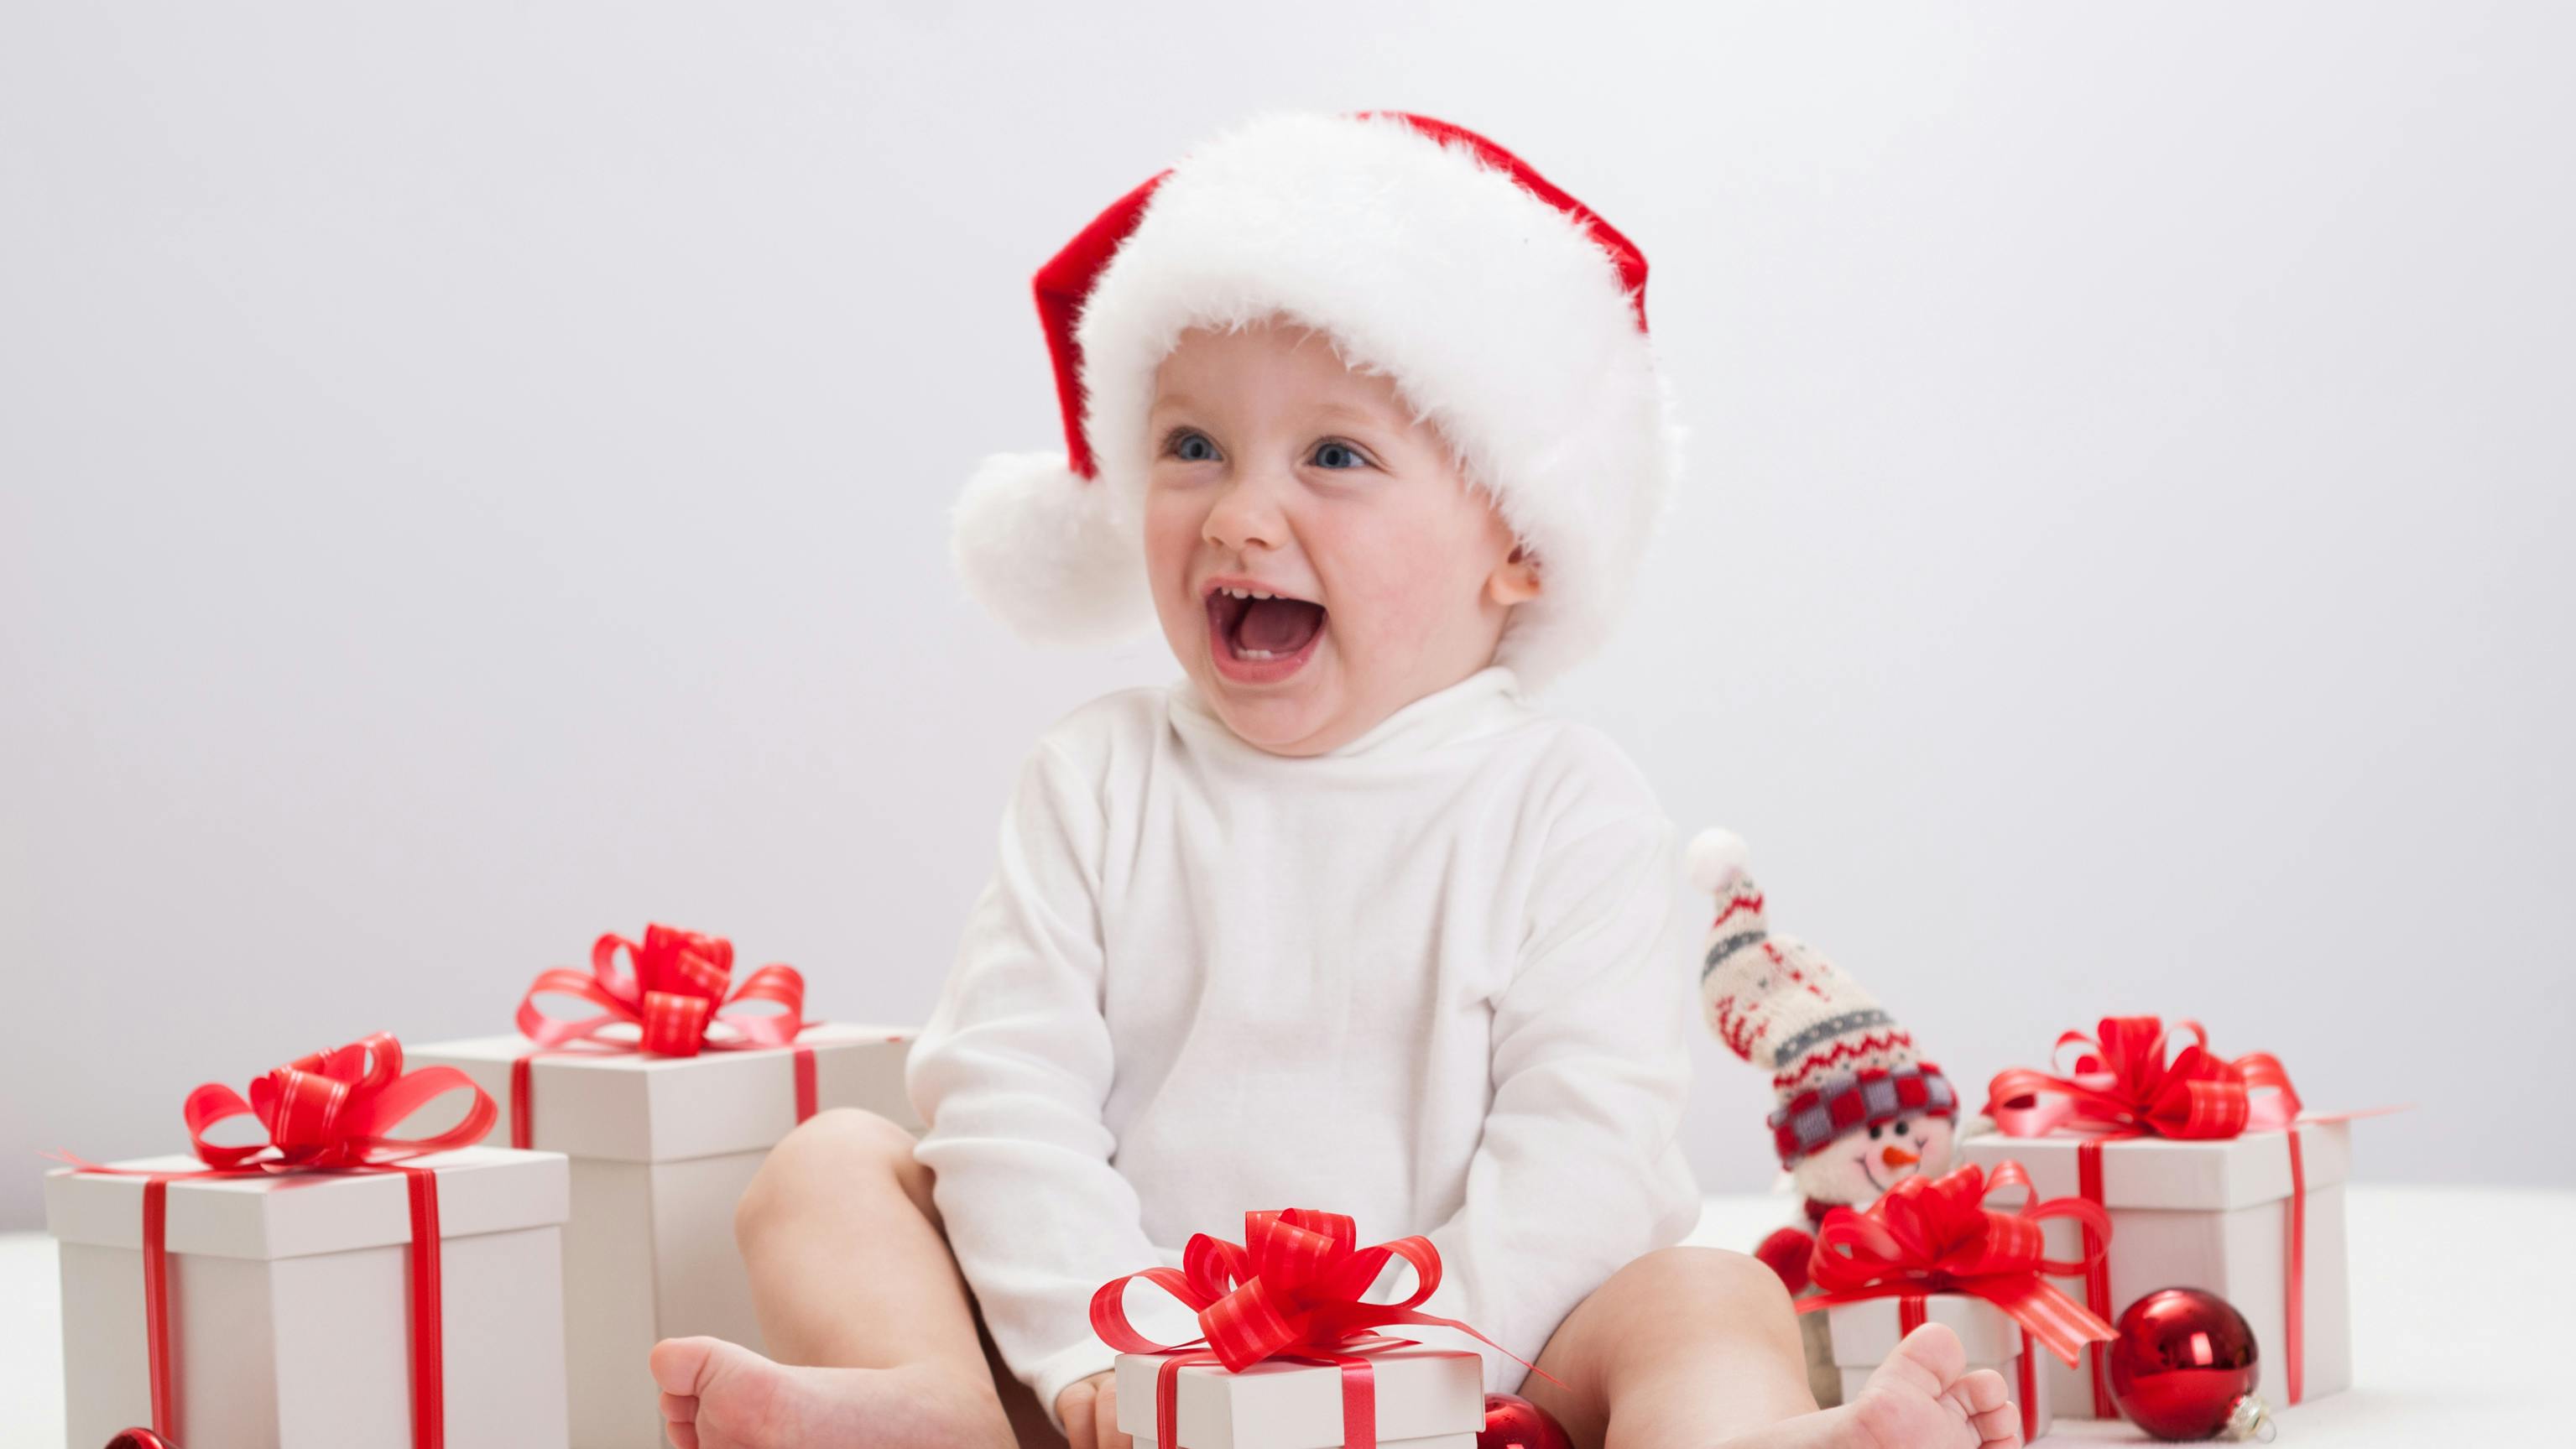 Lille pige med nissehue sidder med julegaver omkring sig.